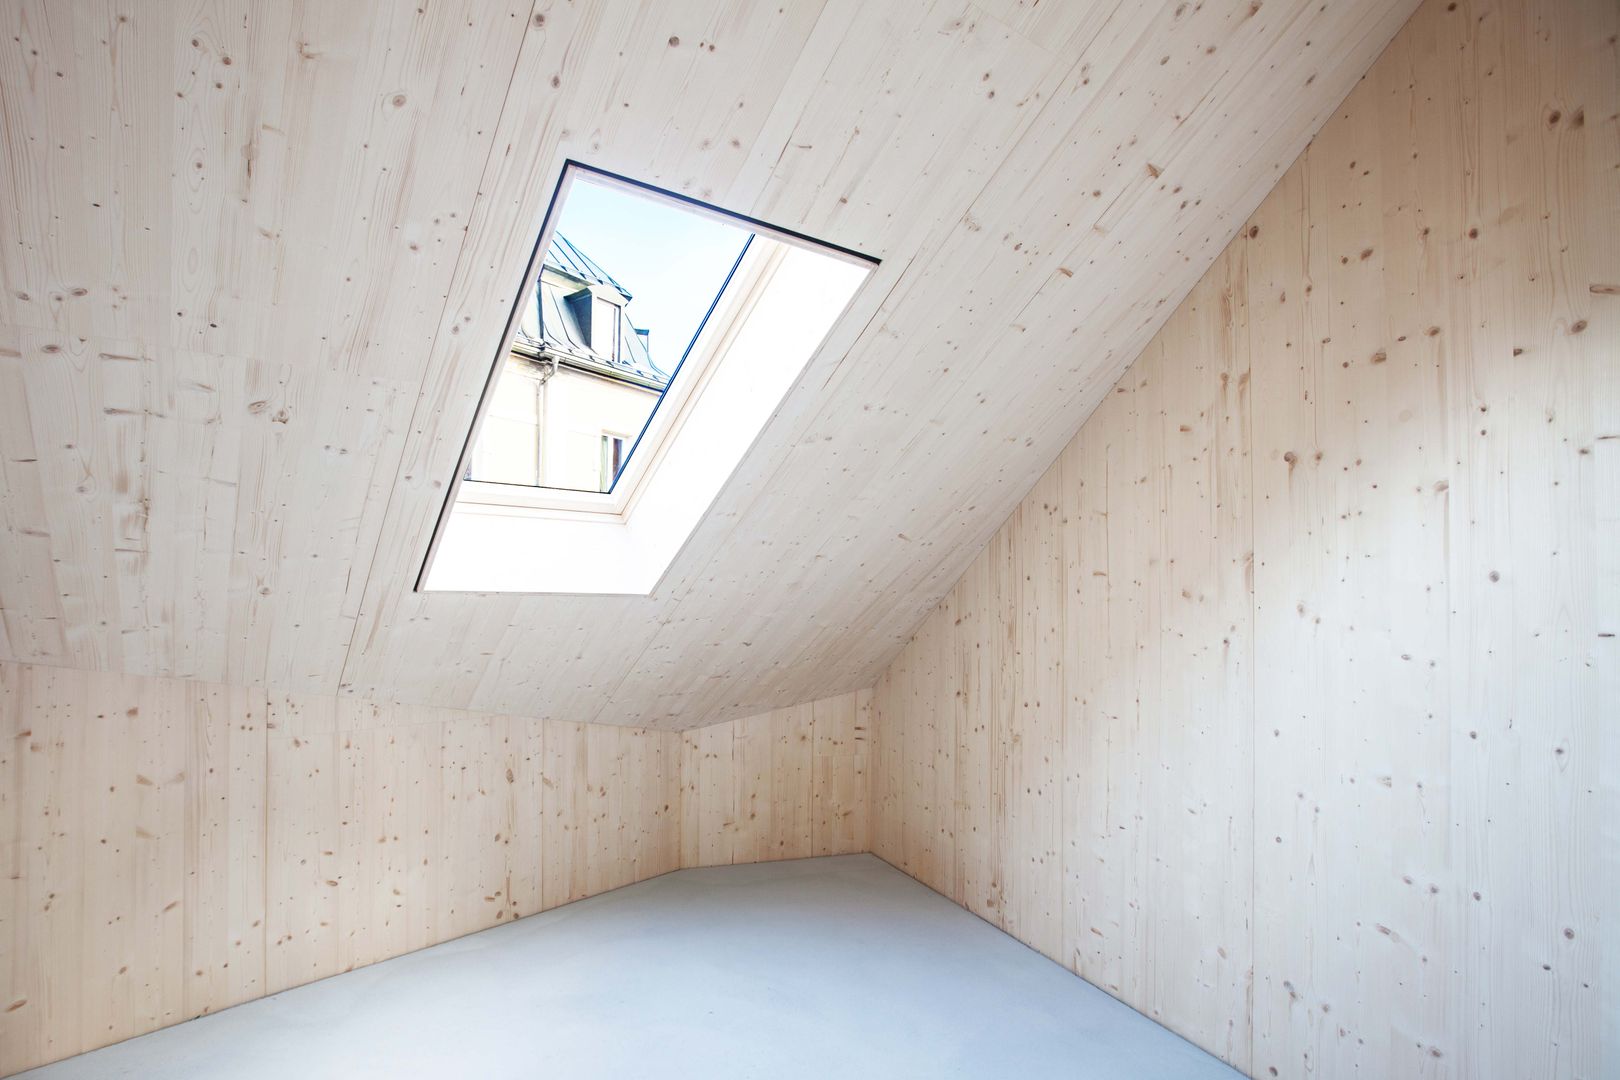 Neubau eines Low-Budget Stadthauses, Studio für Architektur Bernd Vordermeier Studio für Architektur Bernd Vordermeier Walls Wood Wood effect